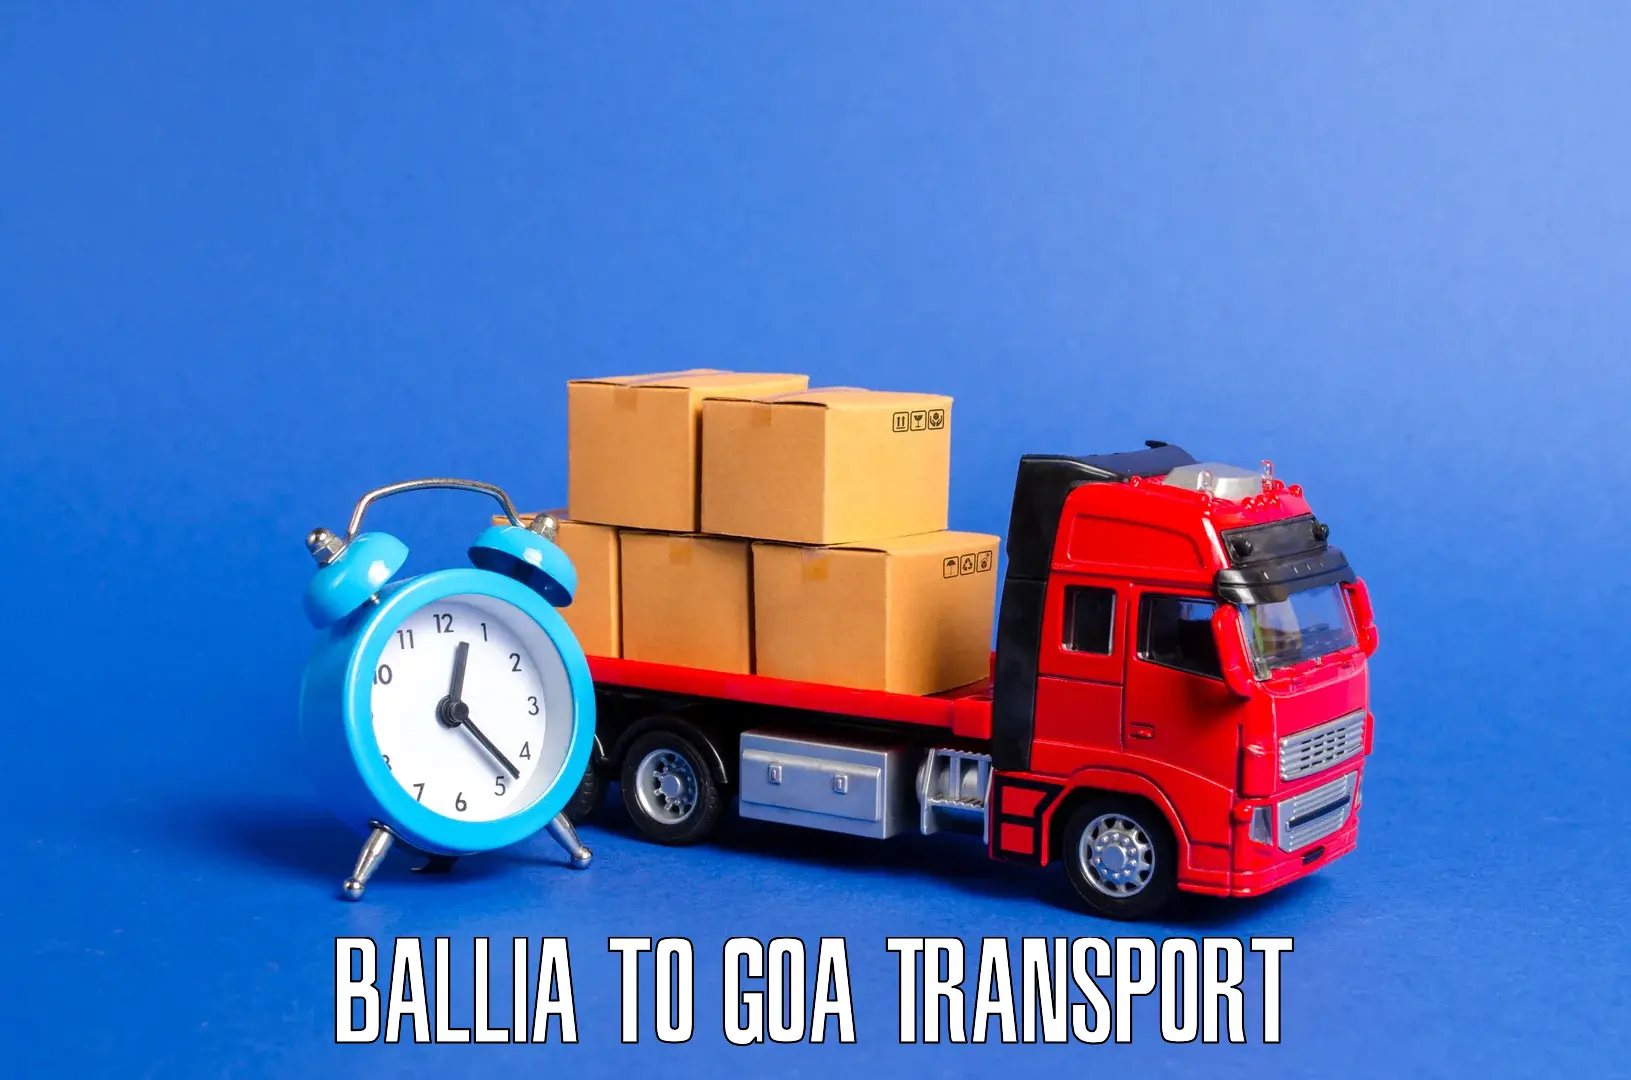 Cargo train transport services Ballia to NIT Goa